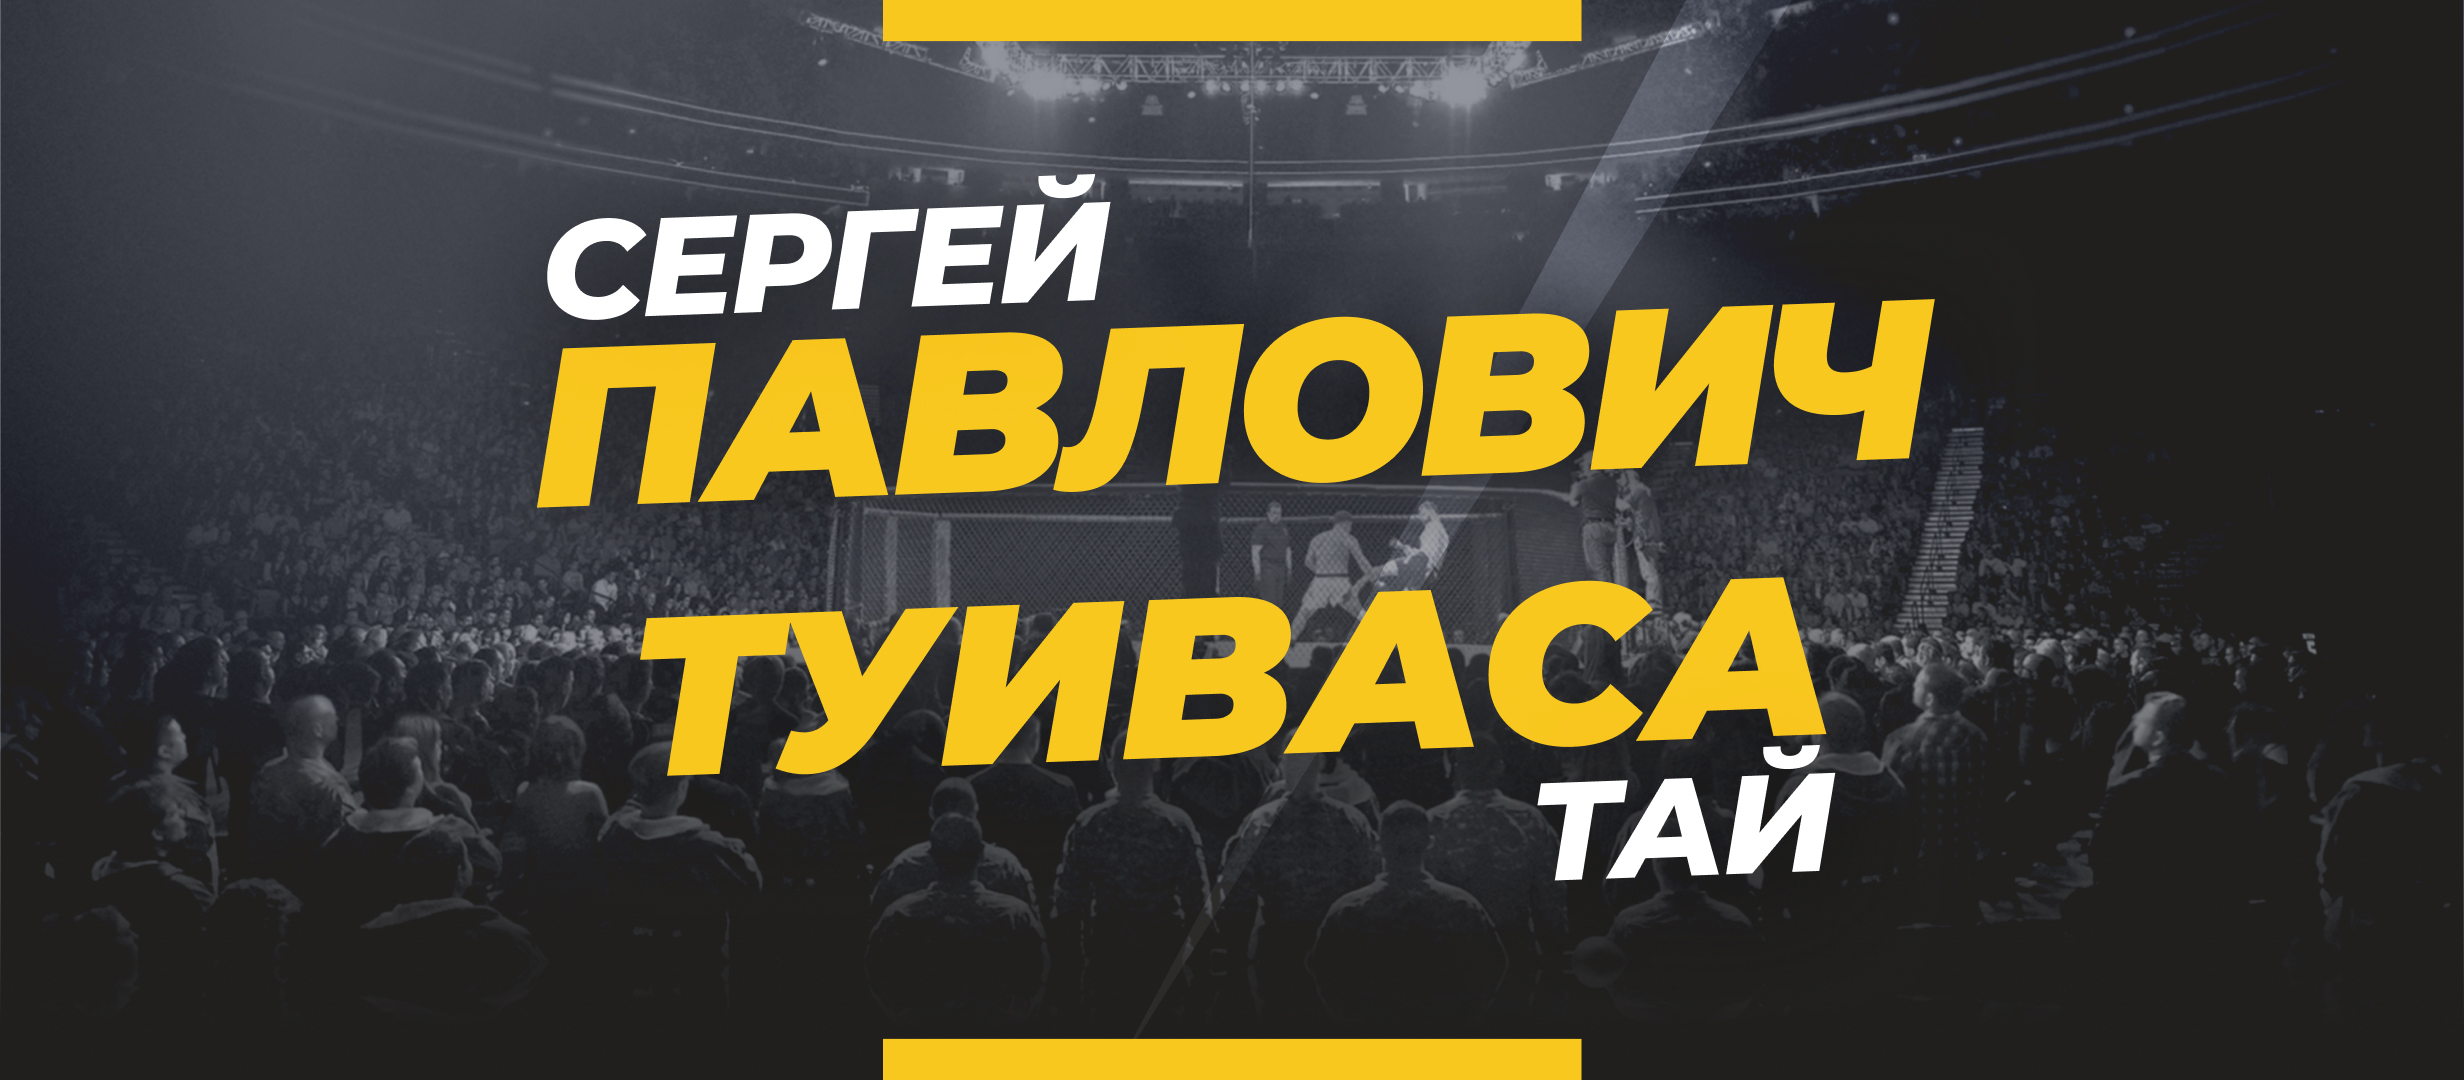 Павлович — Туиваса: прогноз, ставки и коэффициенты на бой UFC